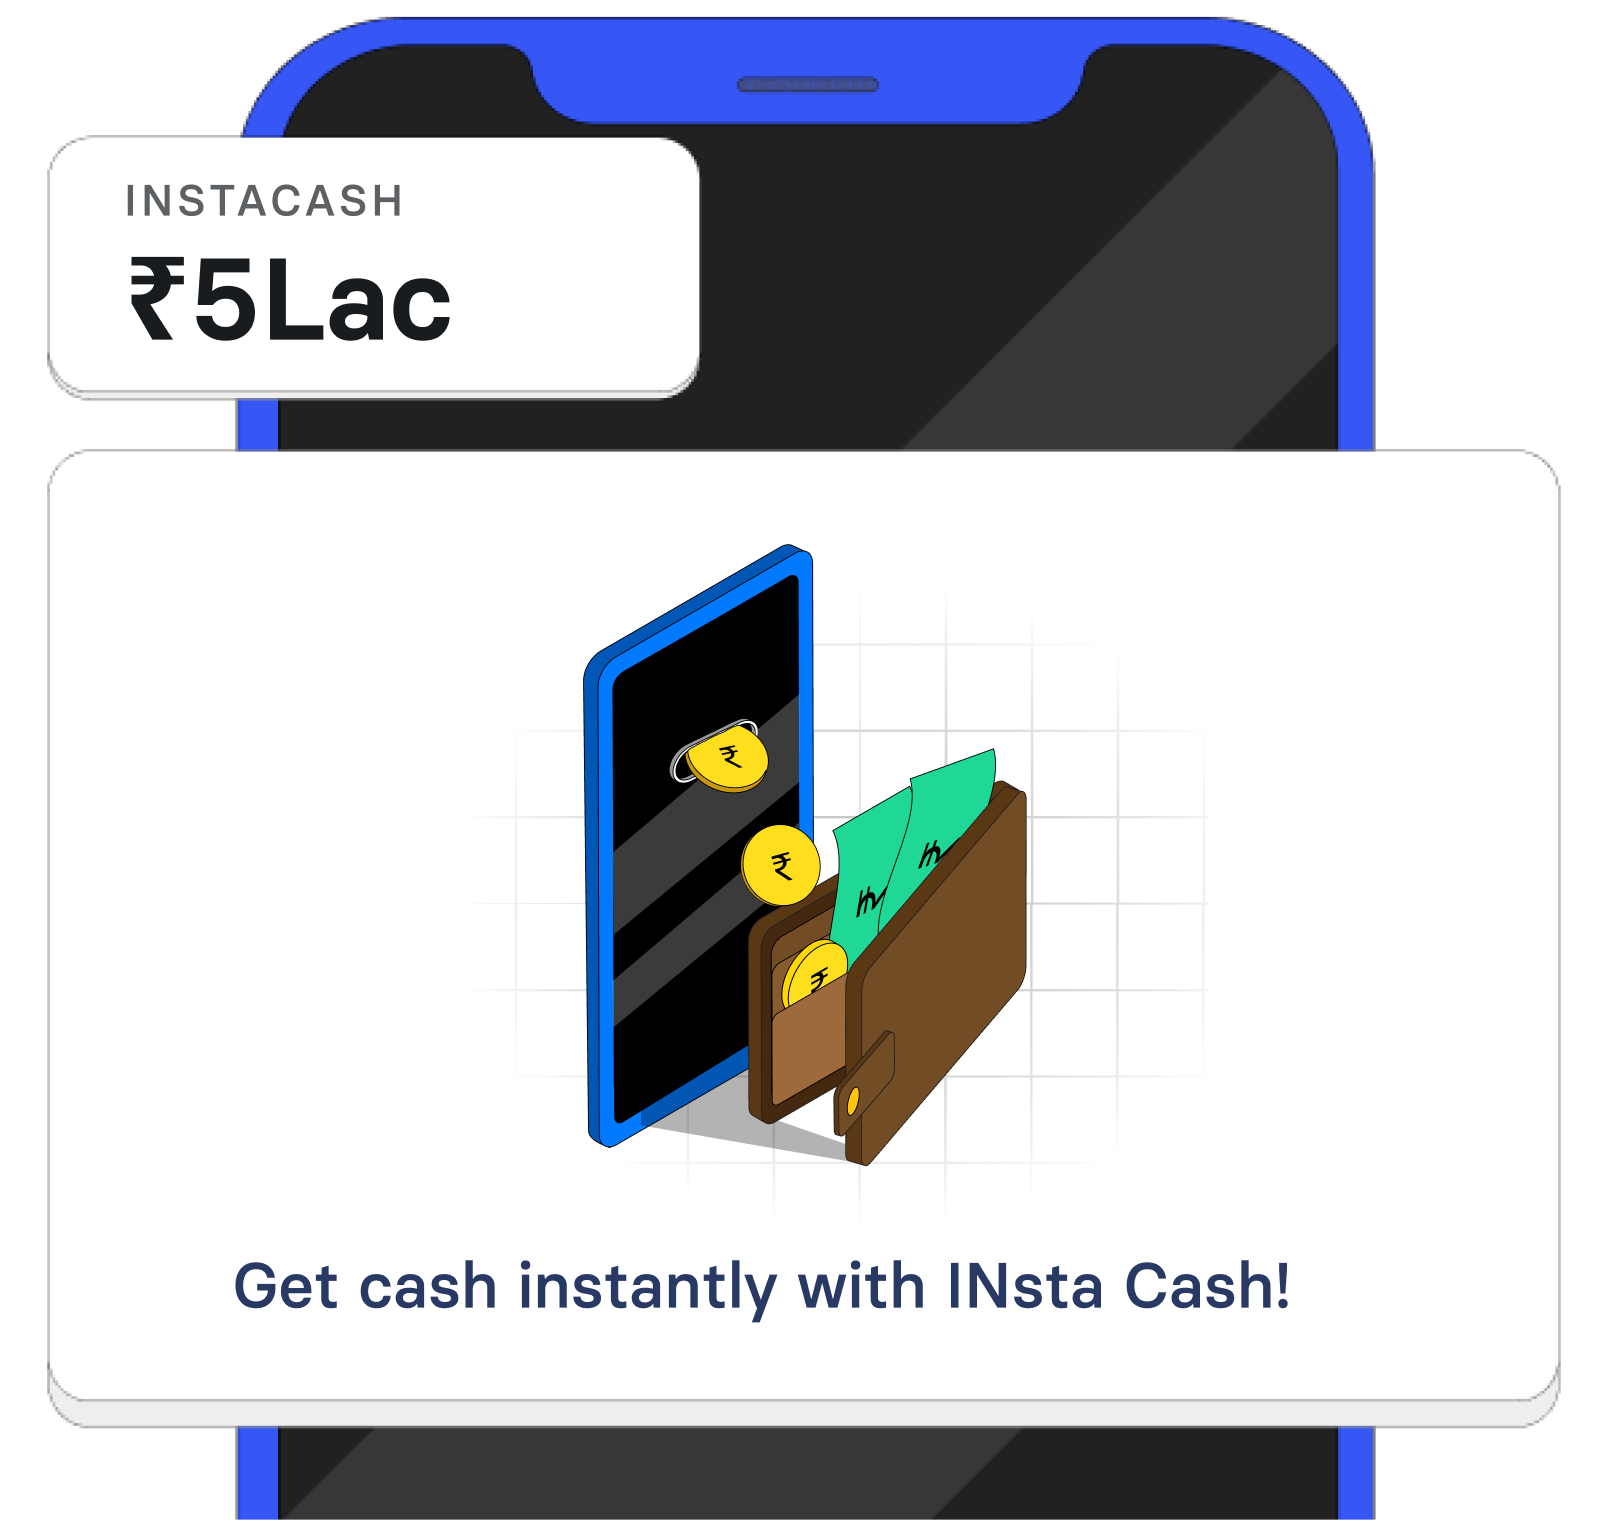 INsta Cash: Instant Cash